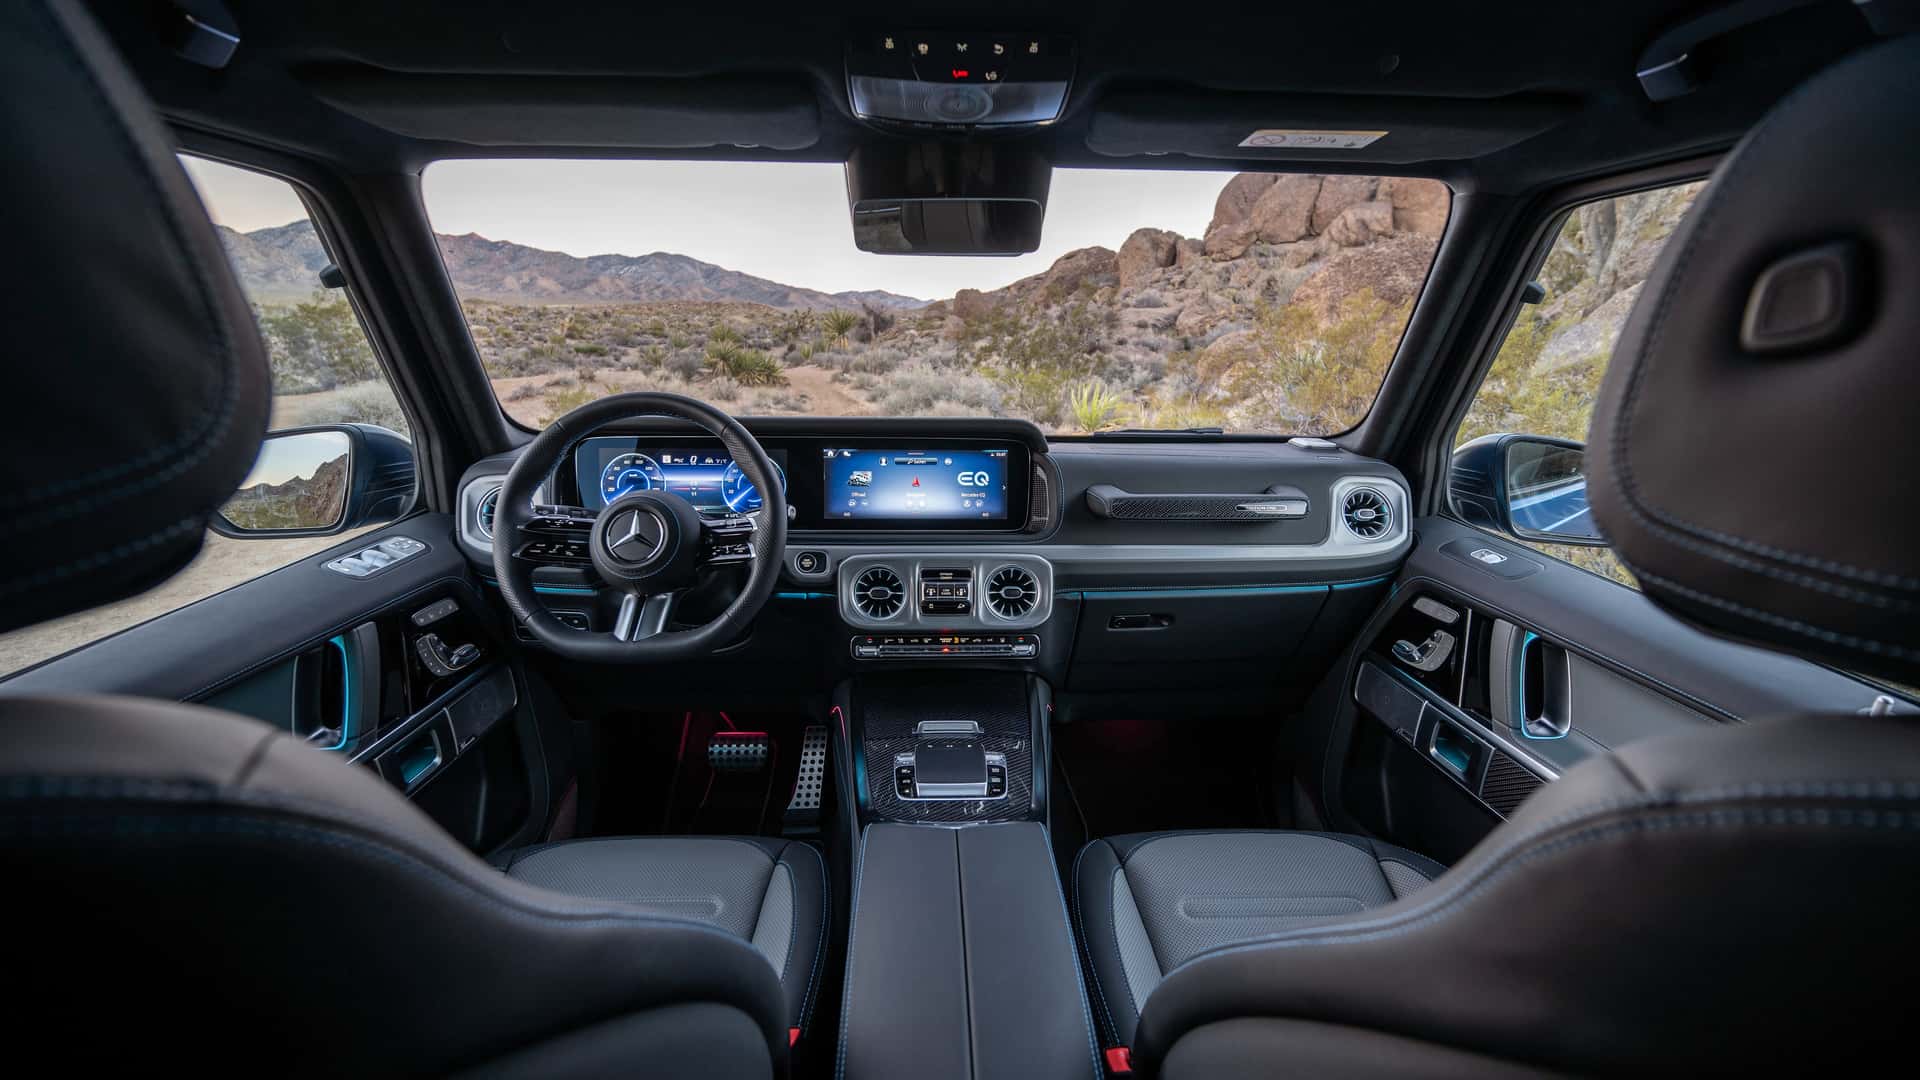 Mercedes-Benz G-Class thuần điện chính thức ra mắt: Tên gọi kỳ lạ, thông số đỉnh cao - Ảnh 6.